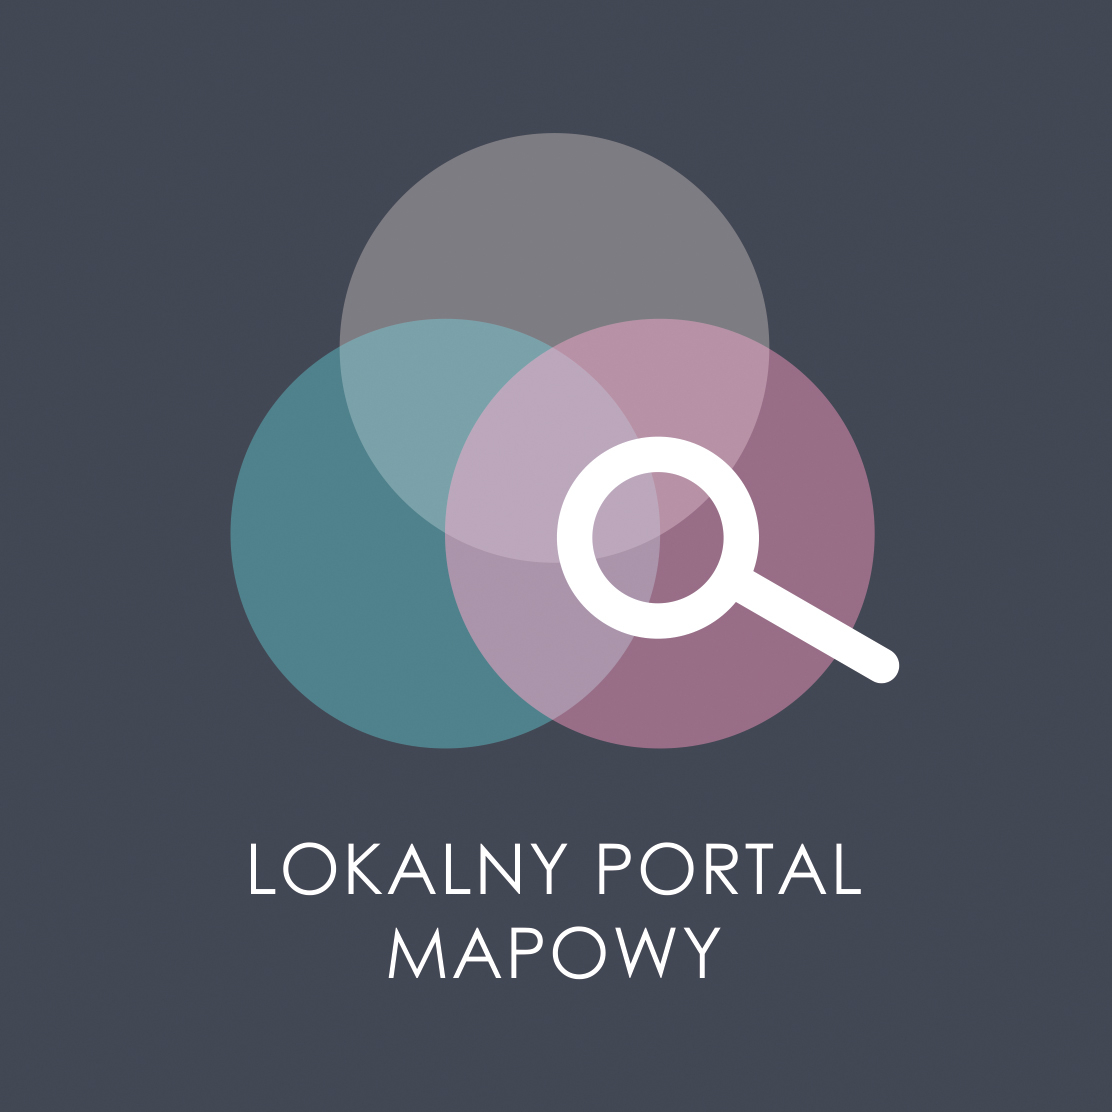 Lokalny portal mapowy